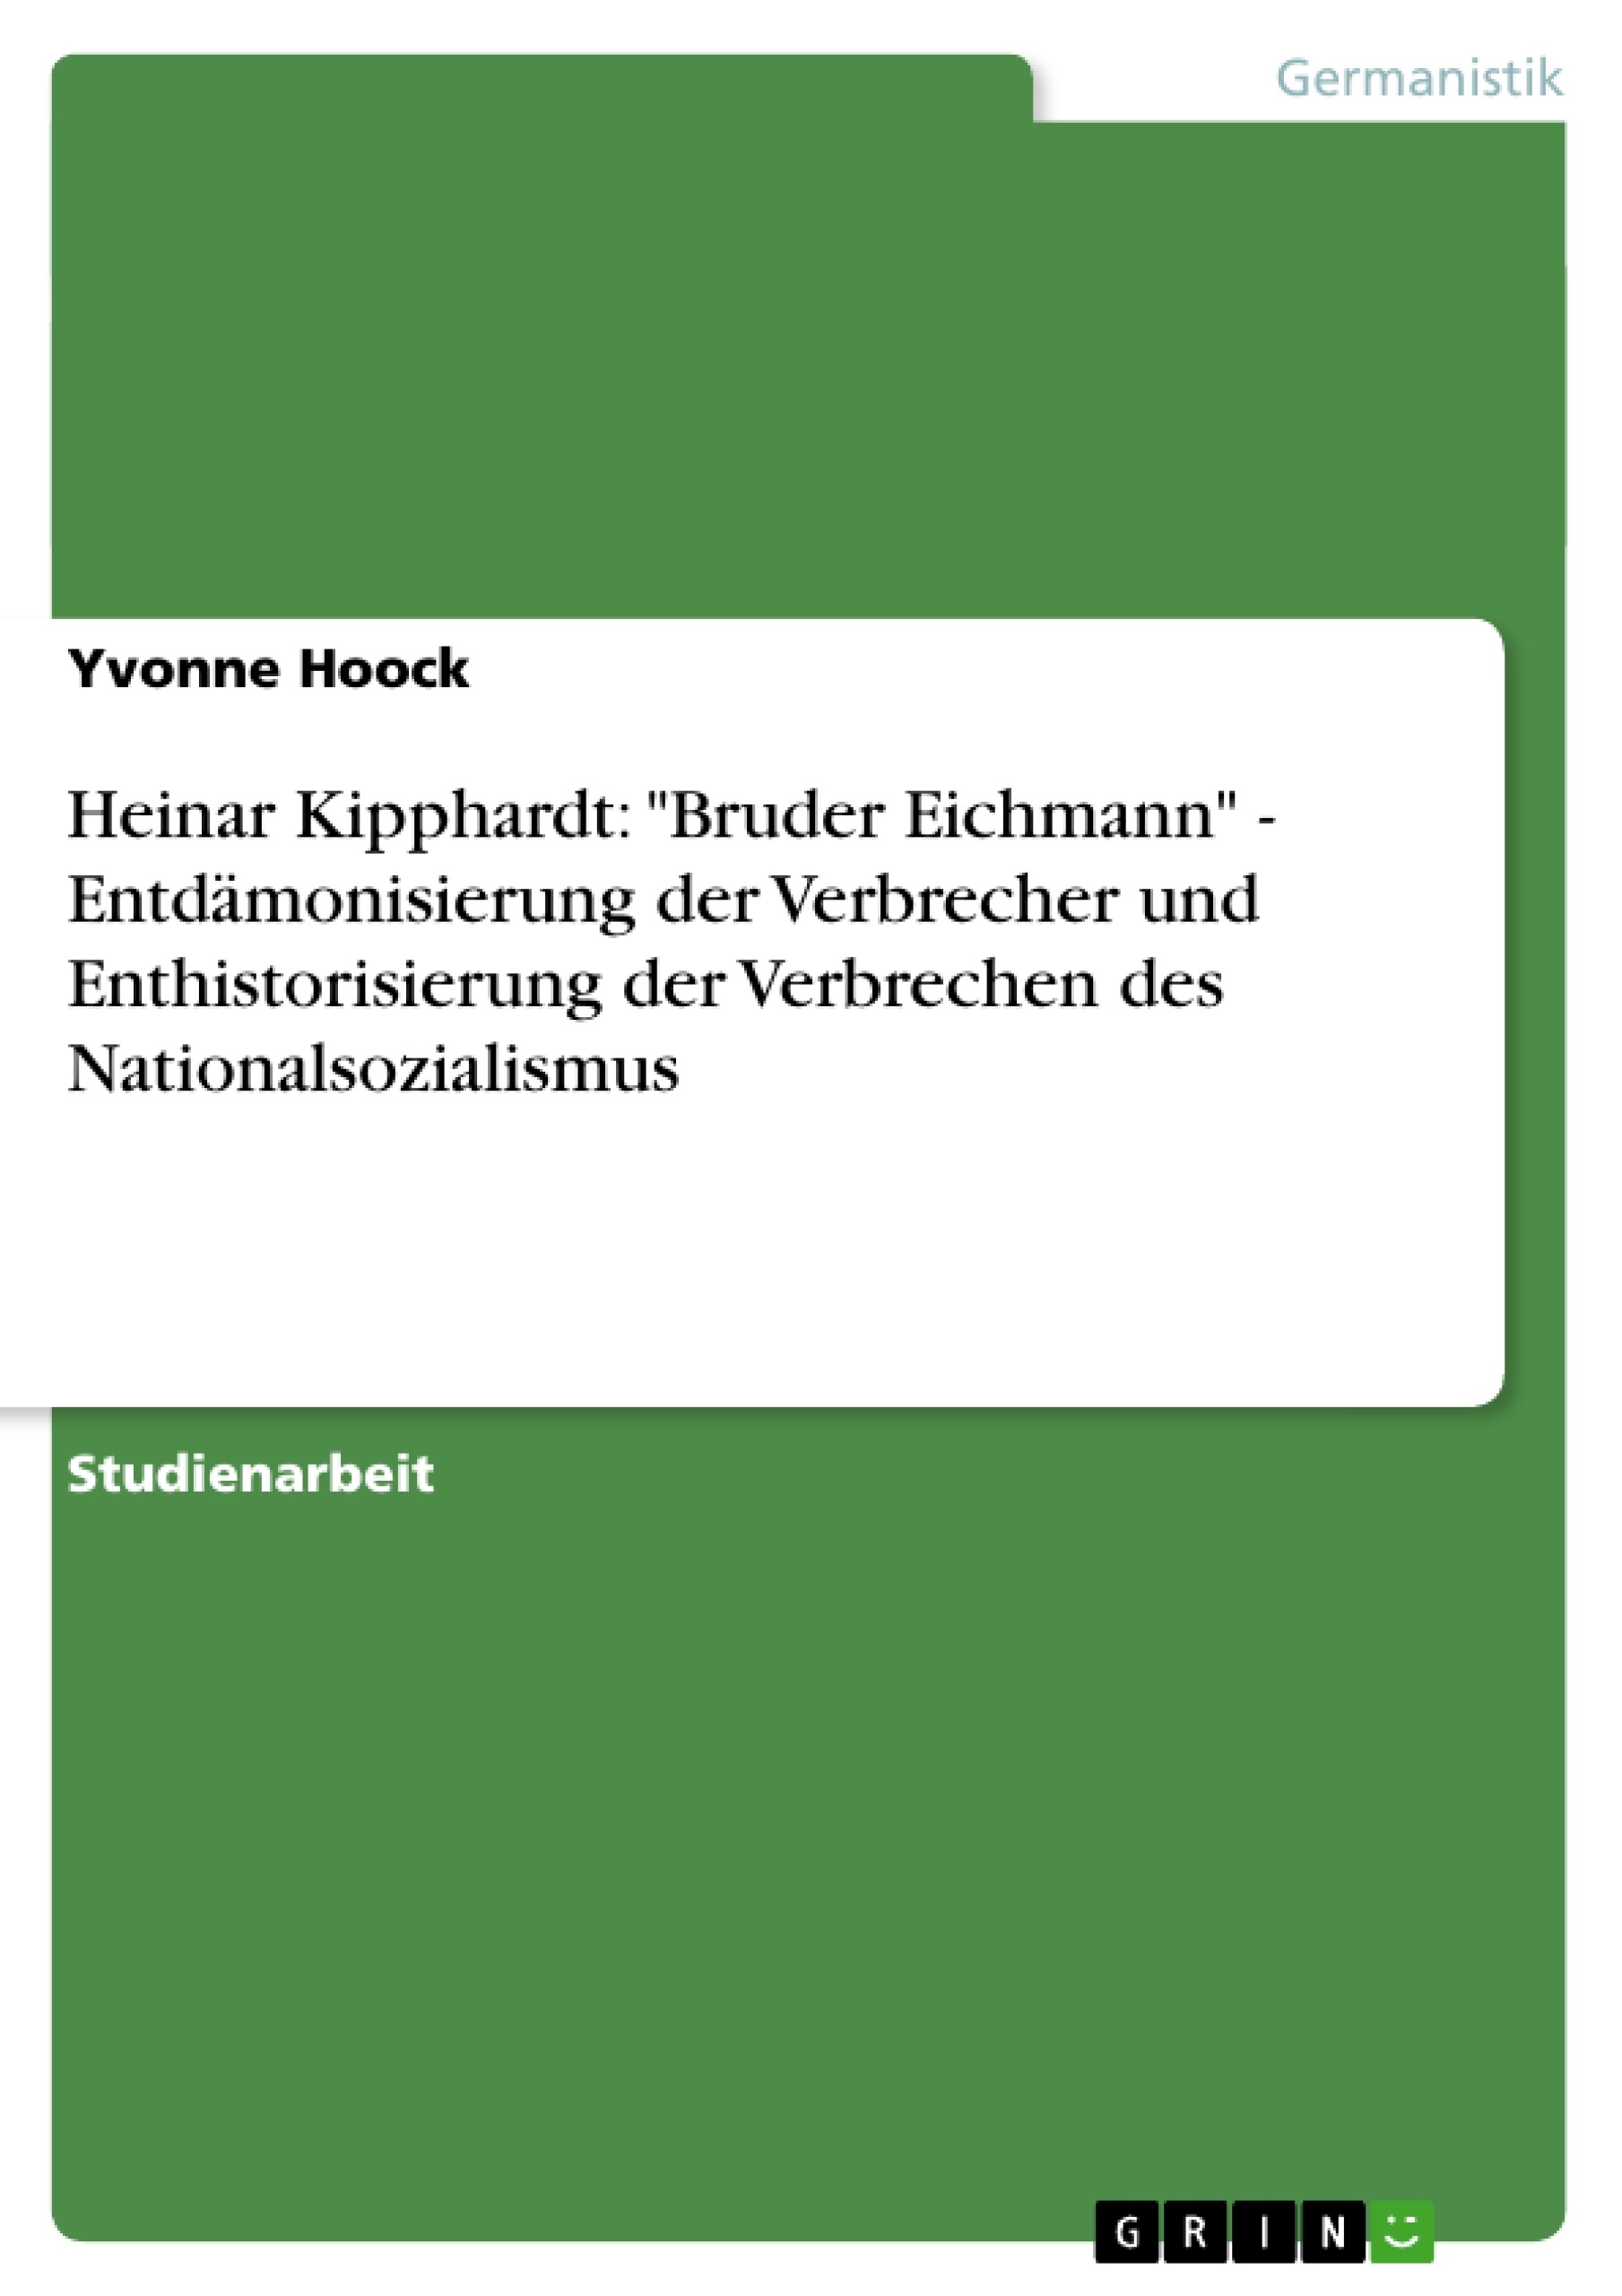 Título: Heinar Kipphardt: "Bruder Eichmann" - Entdämonisierung der Verbrecher und Enthistorisierung der Verbrechen des Nationalsozialismus